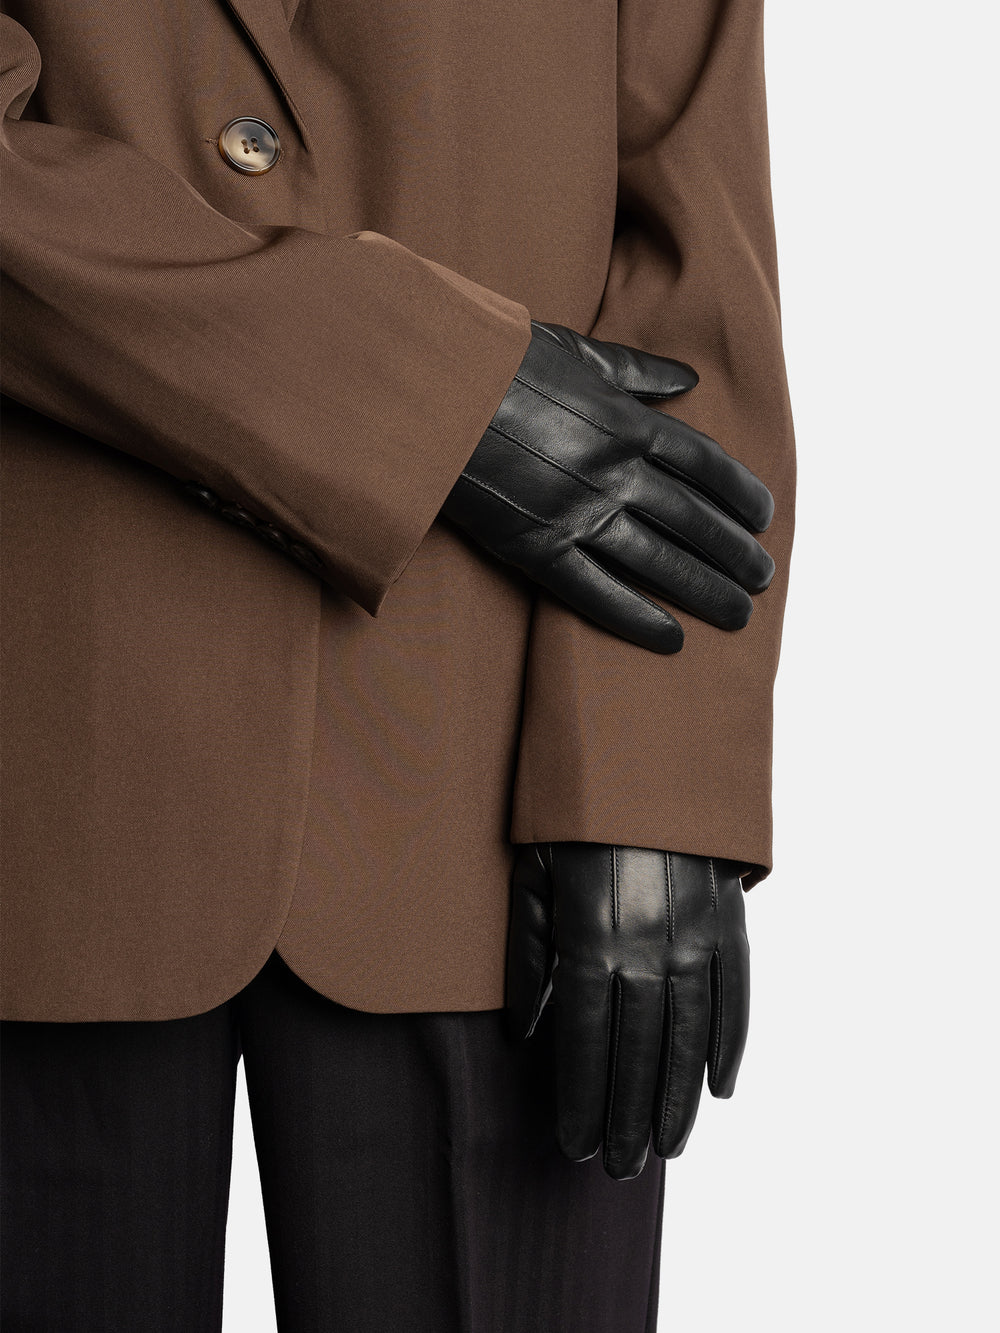 RE:DESIGNED EST 2003 Elvina Gloves Black/Grey